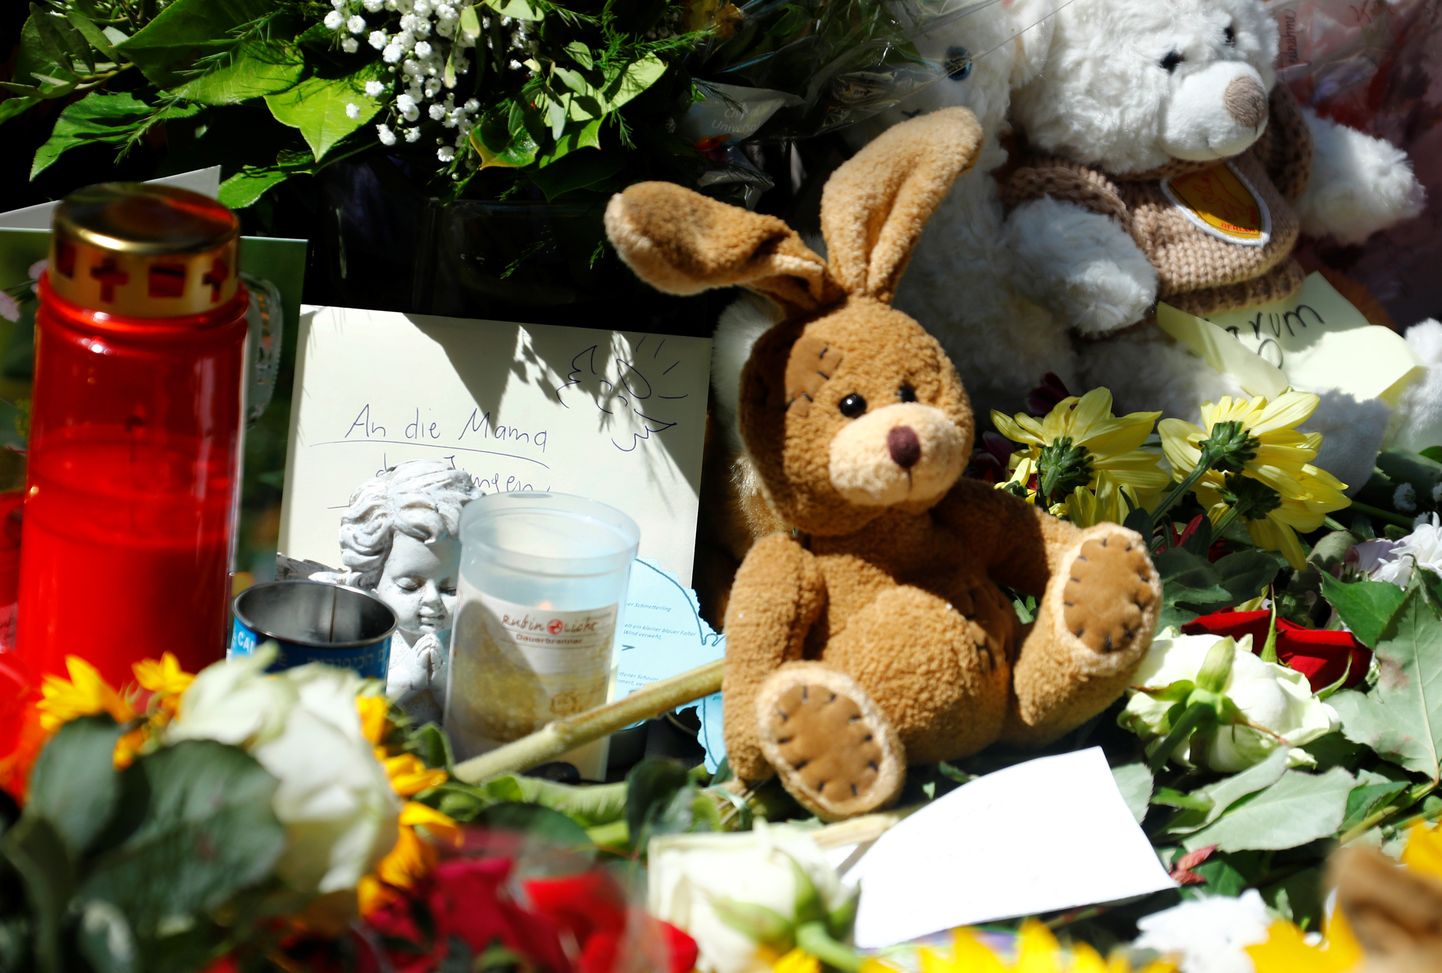 Vēstules, sveces, ziedi un mīkstās mantiņas, ko iedzīvotāji nolikuši par godu Frankfurtes stacijā nogalinātajam zēnam.